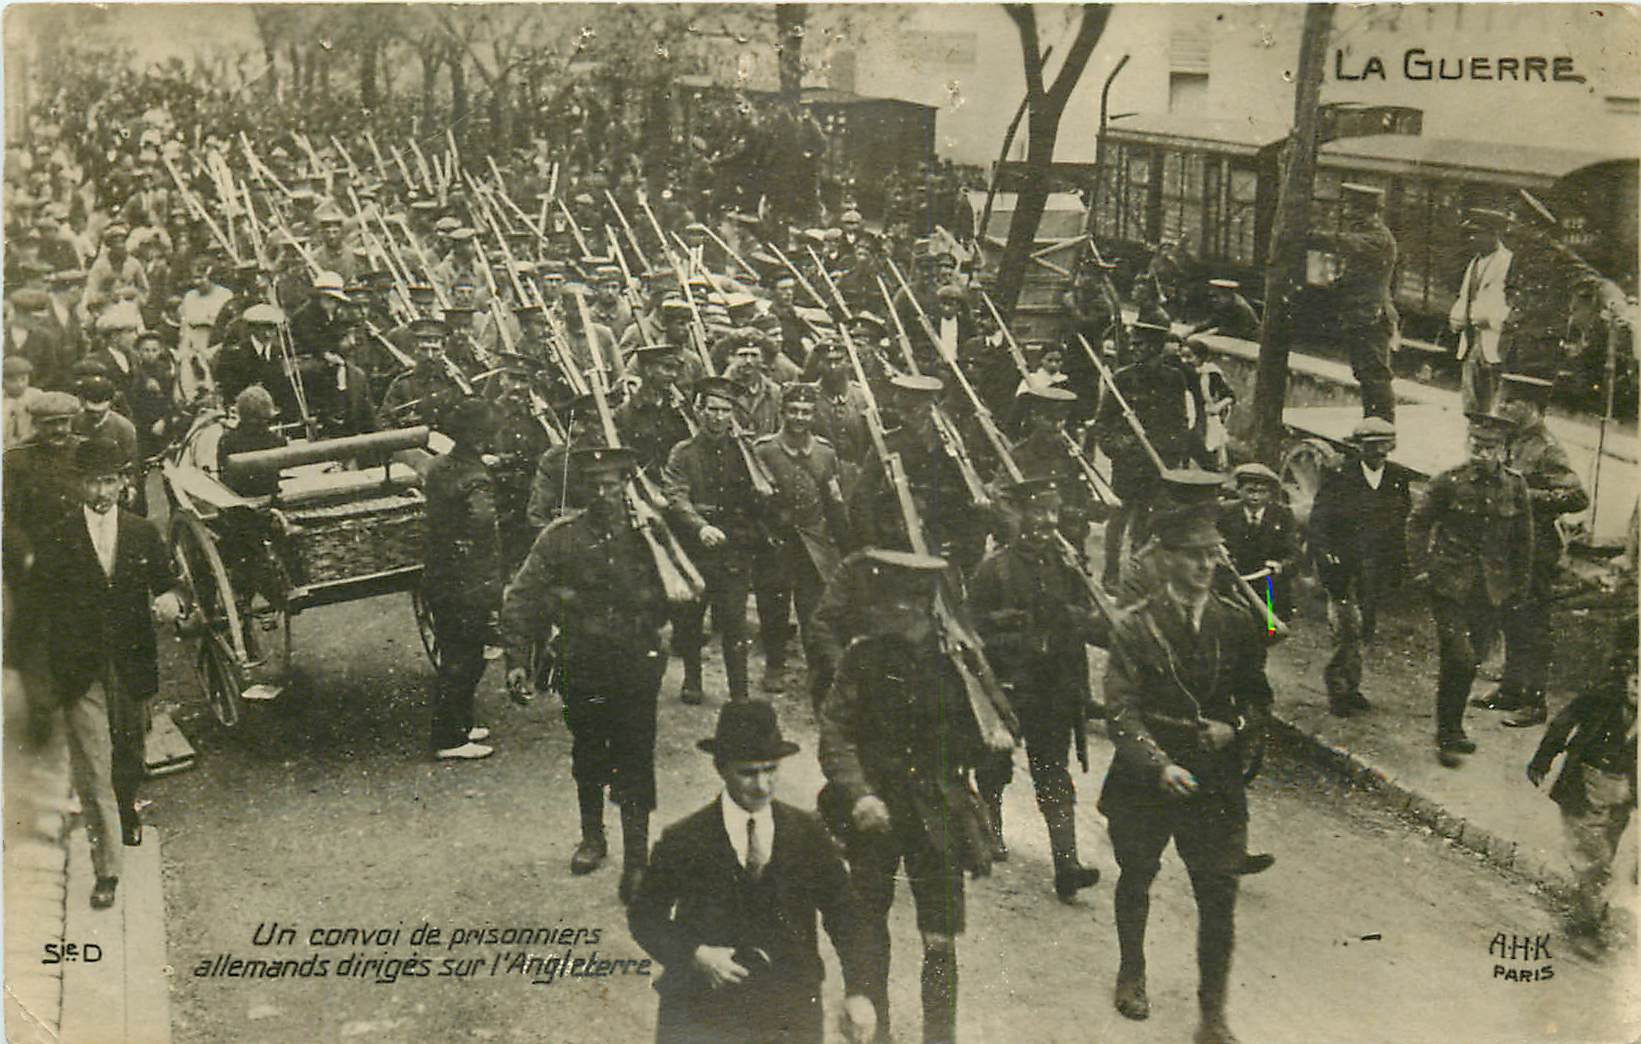 WW GUERRE 1914-18. Convoi de Prisonniers allemands dirigés sur l'Angleterre. Photo carte postale